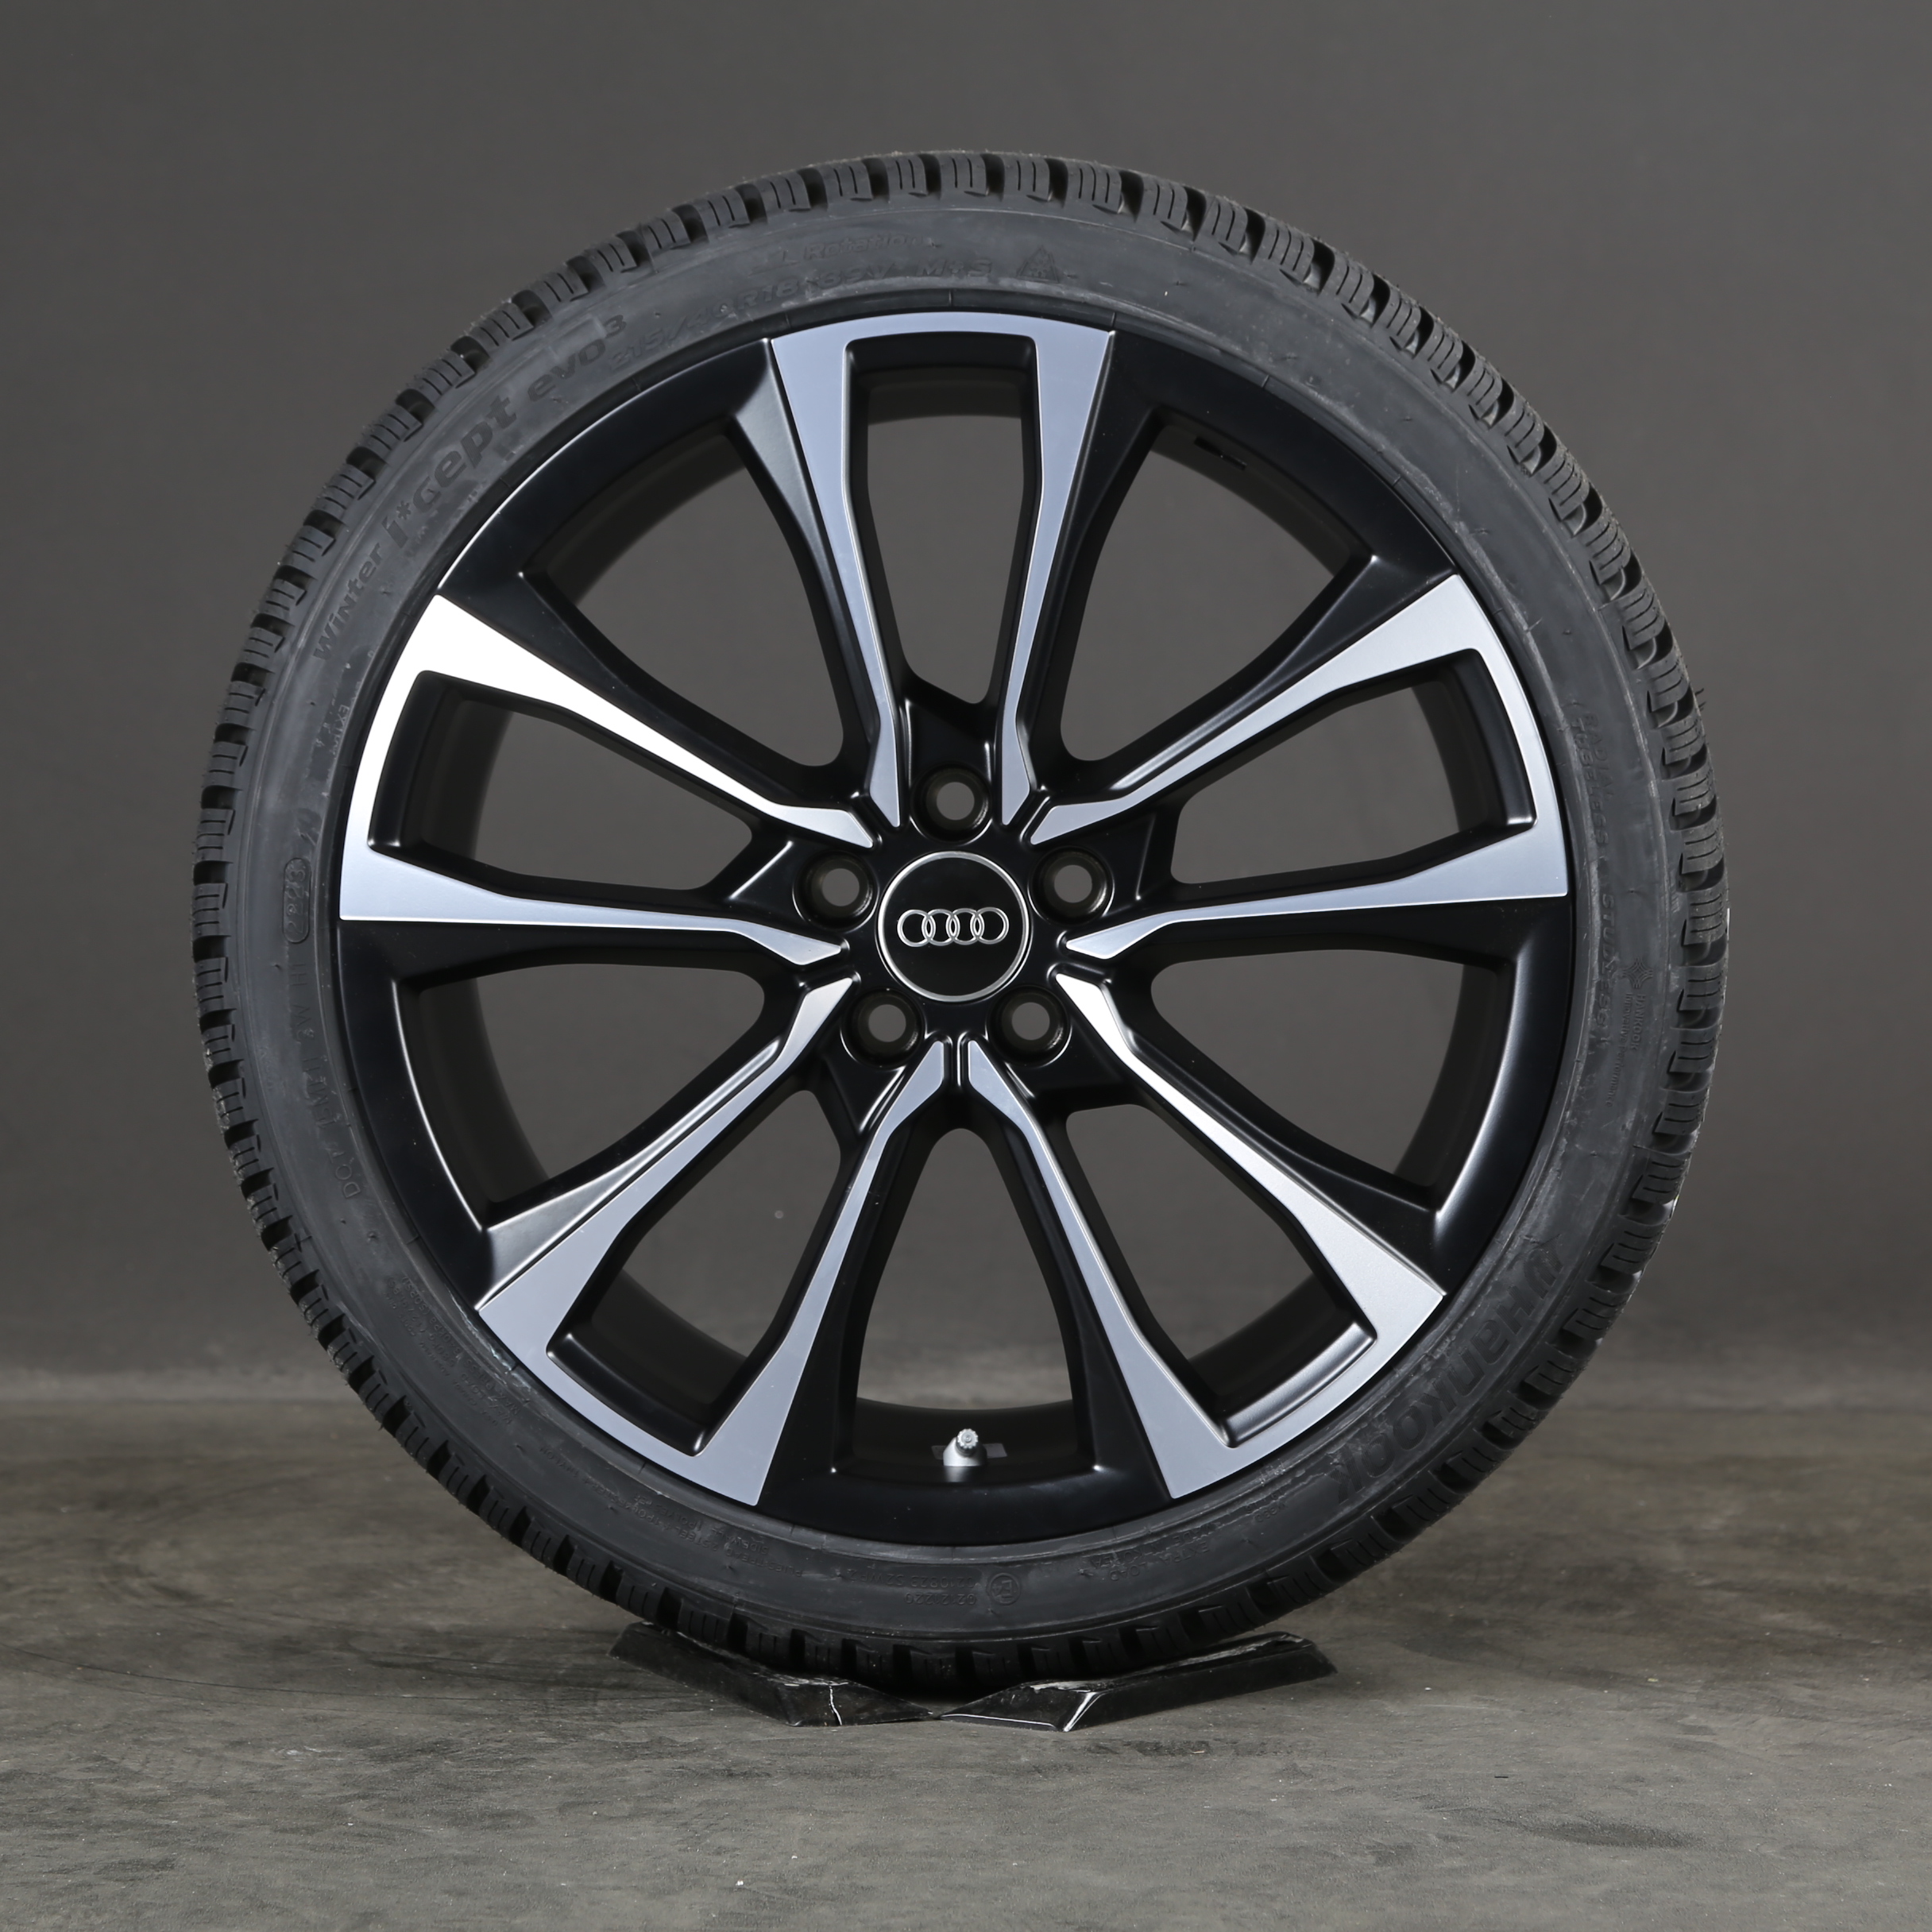 18 pouces roues d'hiver d'origine Audi A1 GB 82A071498 Pilleus pneus d'hiver